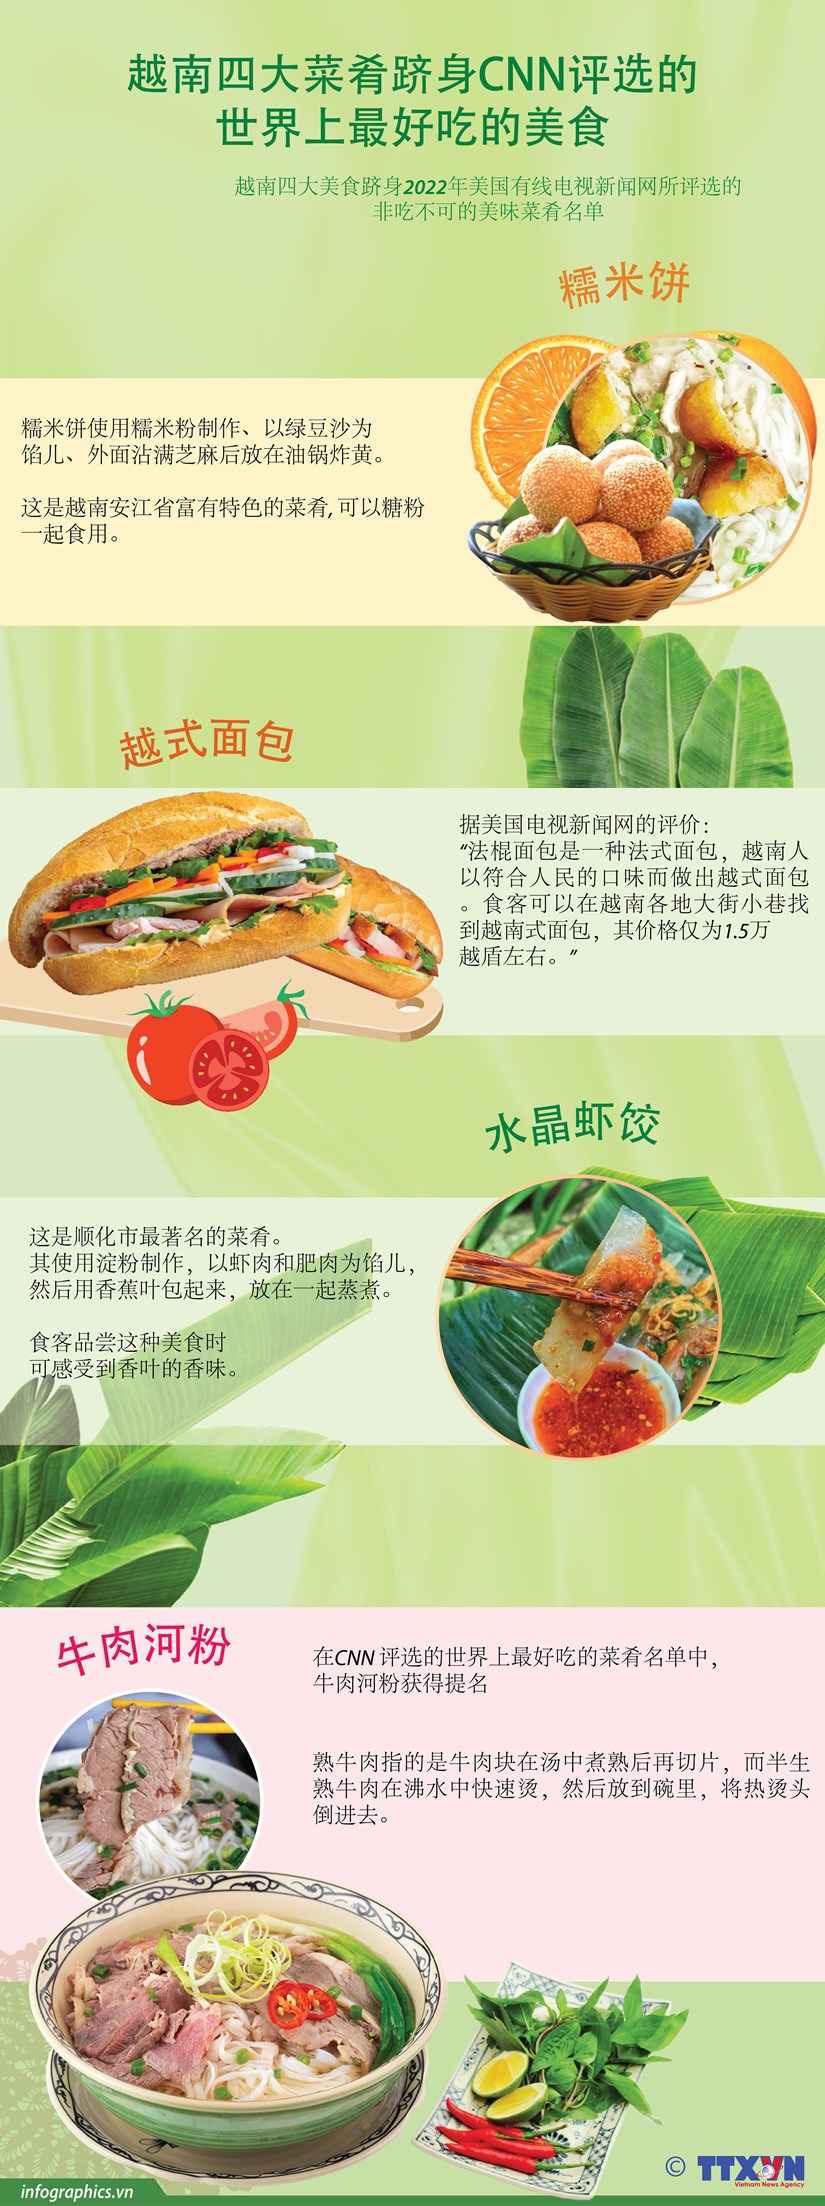 图表新闻：越南四大菜肴跻身CNN 评选的世界上最好吃的美食 hinh anh 1